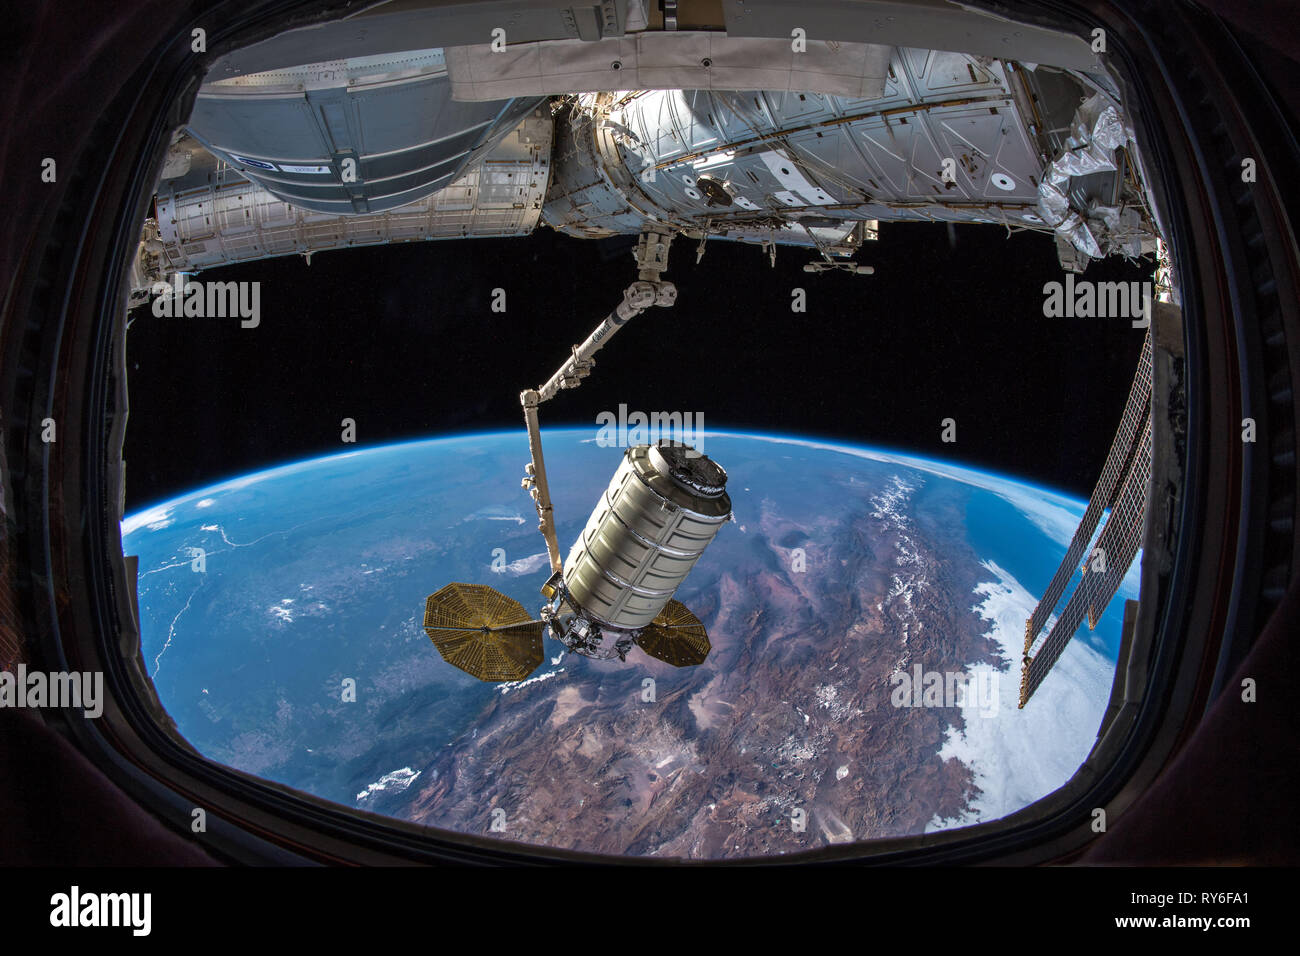 La nave espacial Cygnys se acopló a la Estación Espacial Internacional (ISS), entregando investigaciones y suministros. Saldrá el 2019 de febrero. Foto de stock